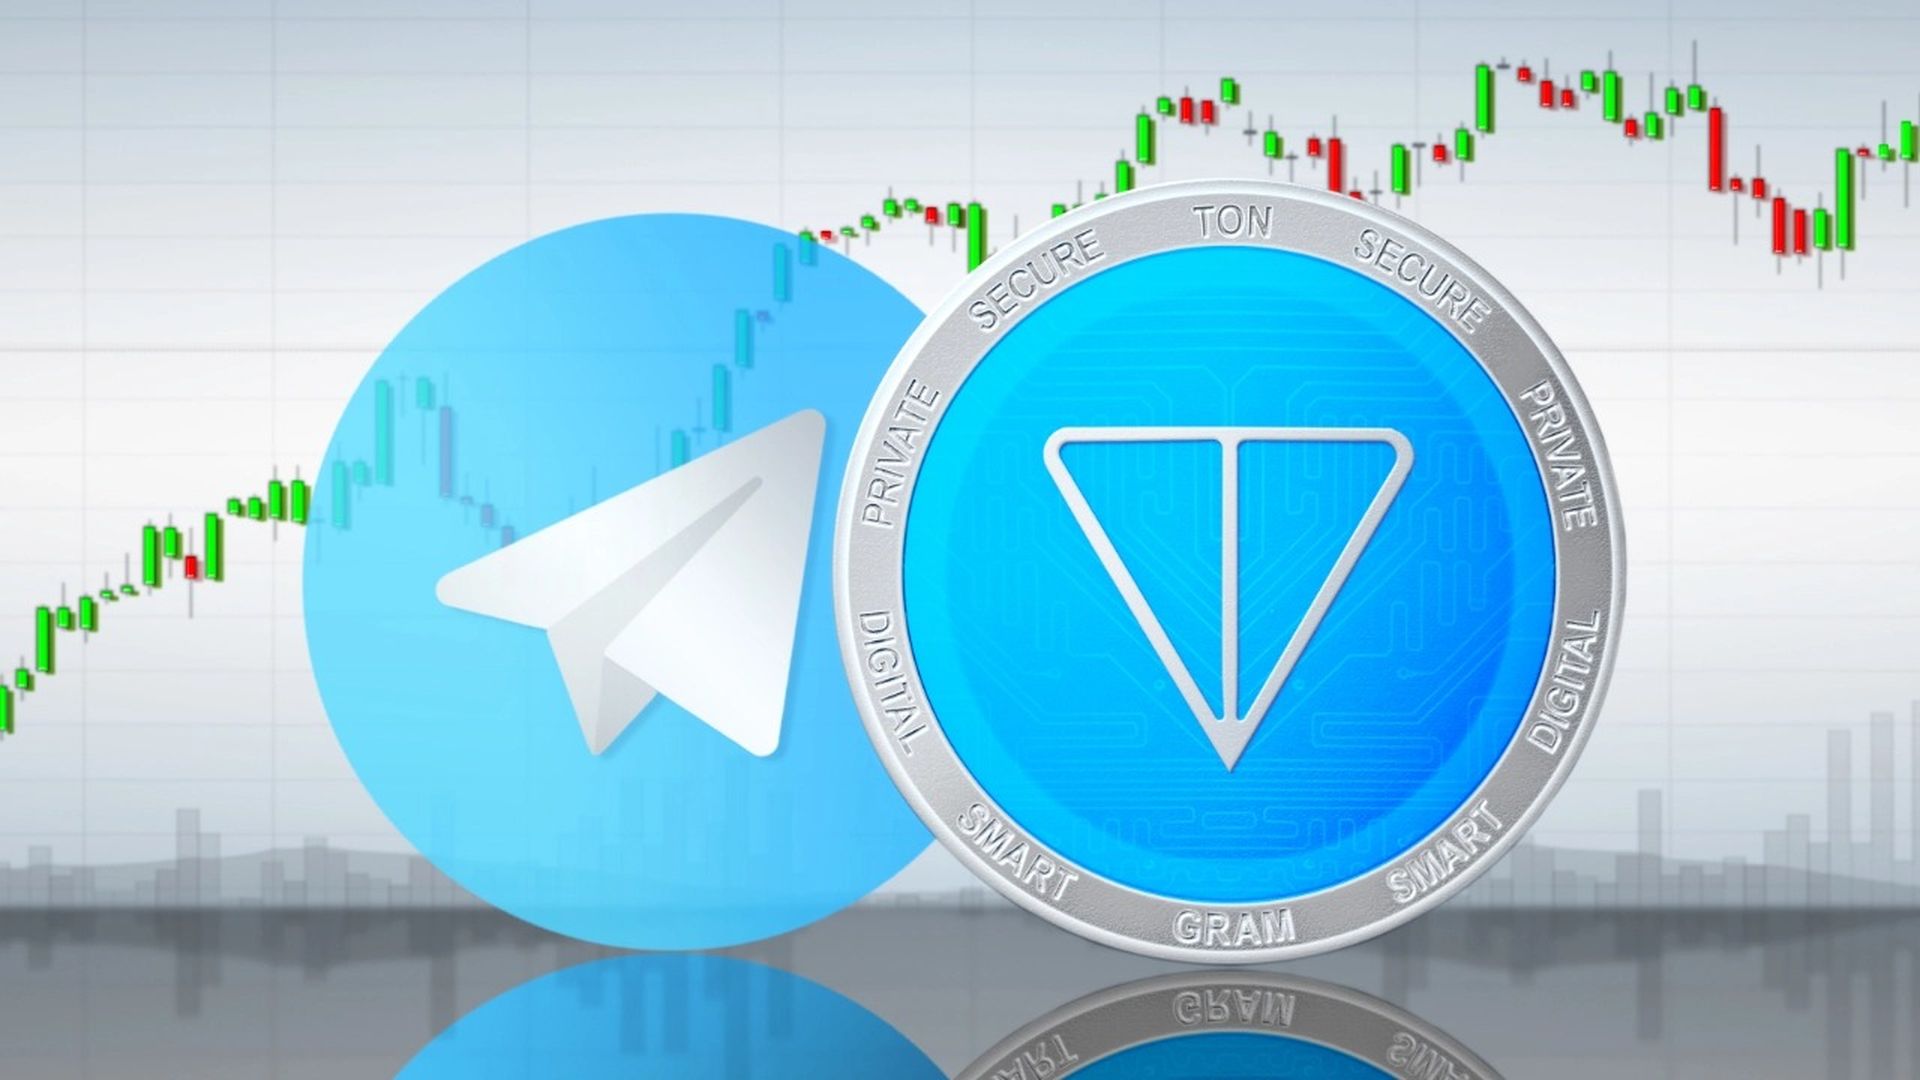 Os usuários do Telegram agora podem negociar TON usando a plataforma de mensagens